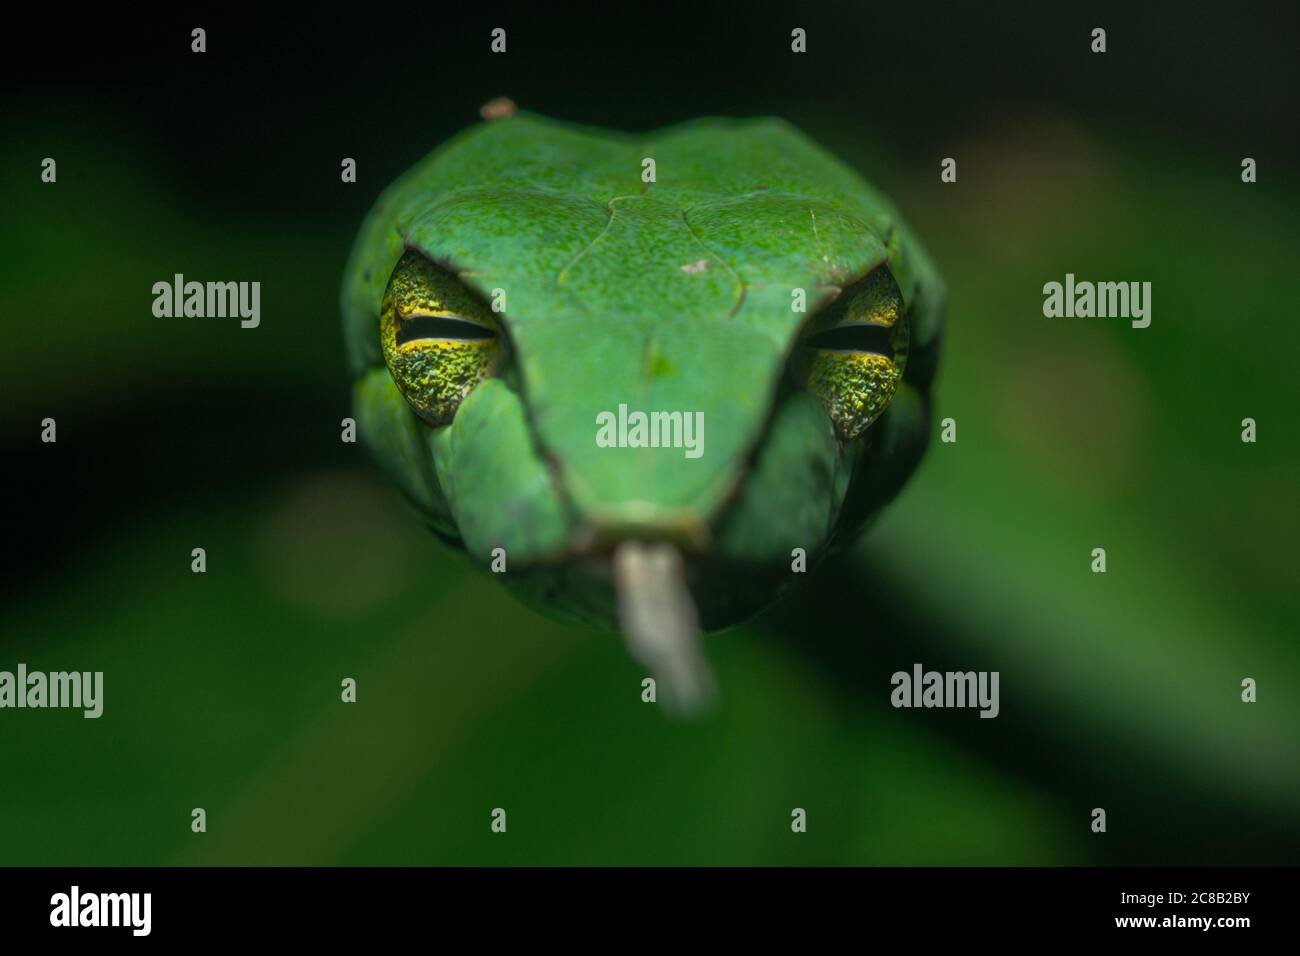 Una gran serpiente de vid asiática (Ahaetulla prasina) hace contacto visual con la cámara, sus ojos frontales le dan visión binocular ayudando a atrapar presa. Foto de stock